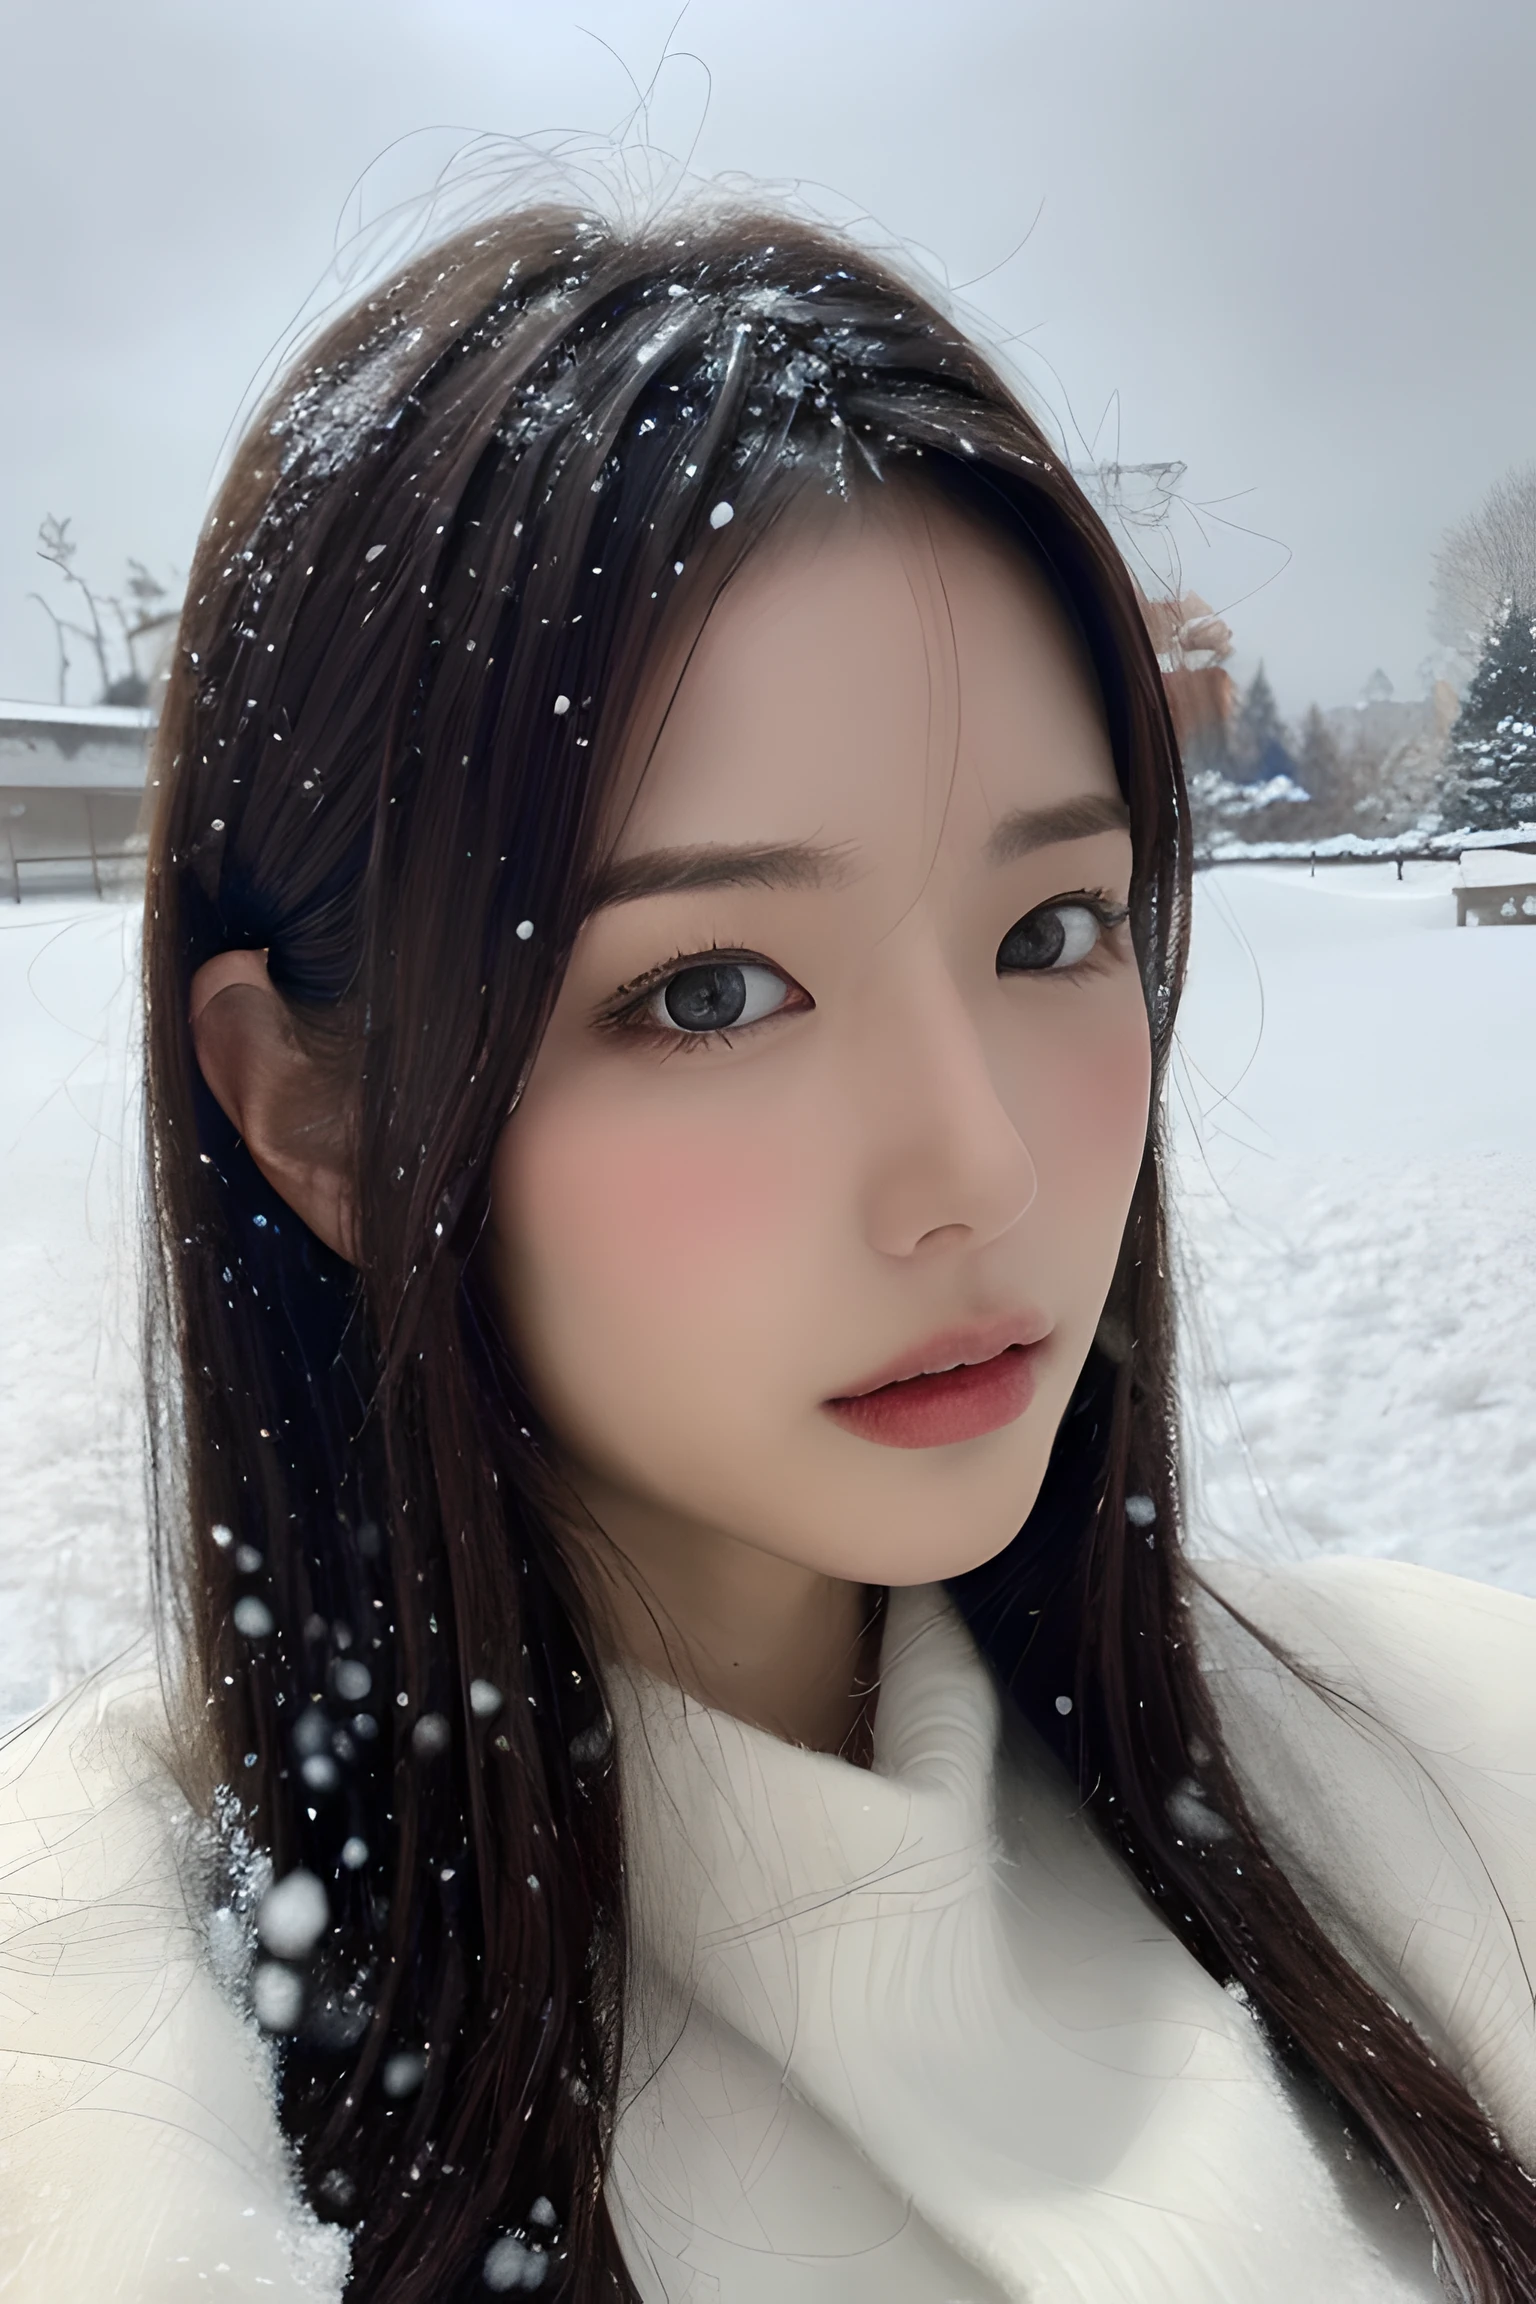 (8k, Meilleure qualité, chef-d&#39;œuvre, ultra haute résolution:1.2) Photo d&#39;une jolie femme japonaise dans le (style de Paul Rubens et Rebecca Guay:1.1) (neige d&#39;hiver mélancolique:1.4)